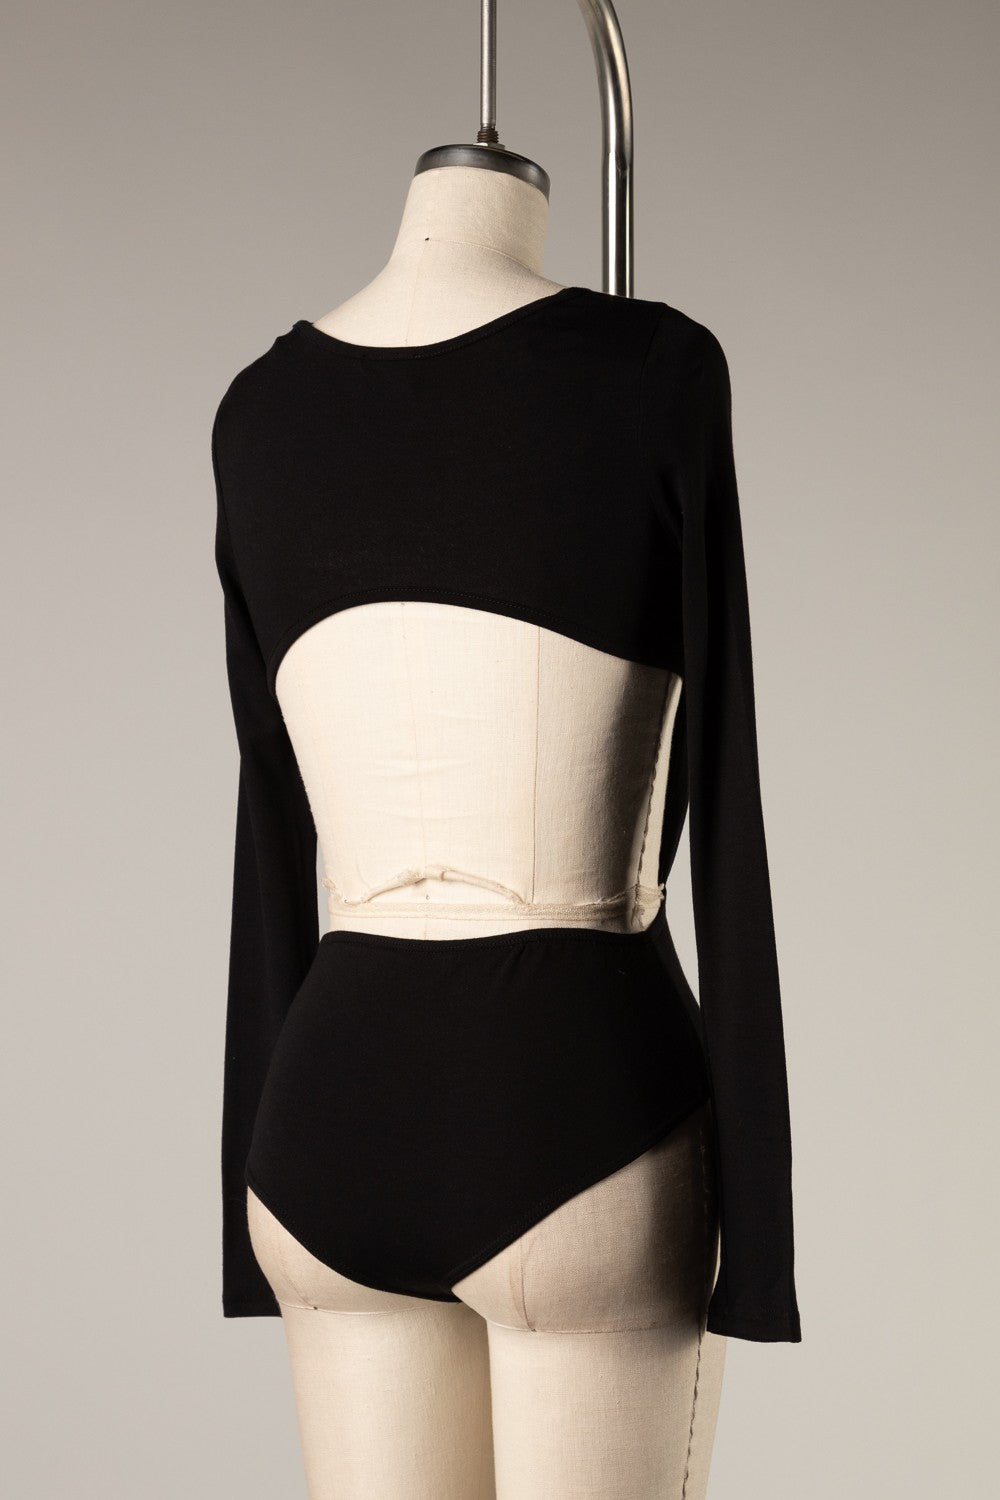 black-long-sleeve-bodysuit-the-shameless-collection